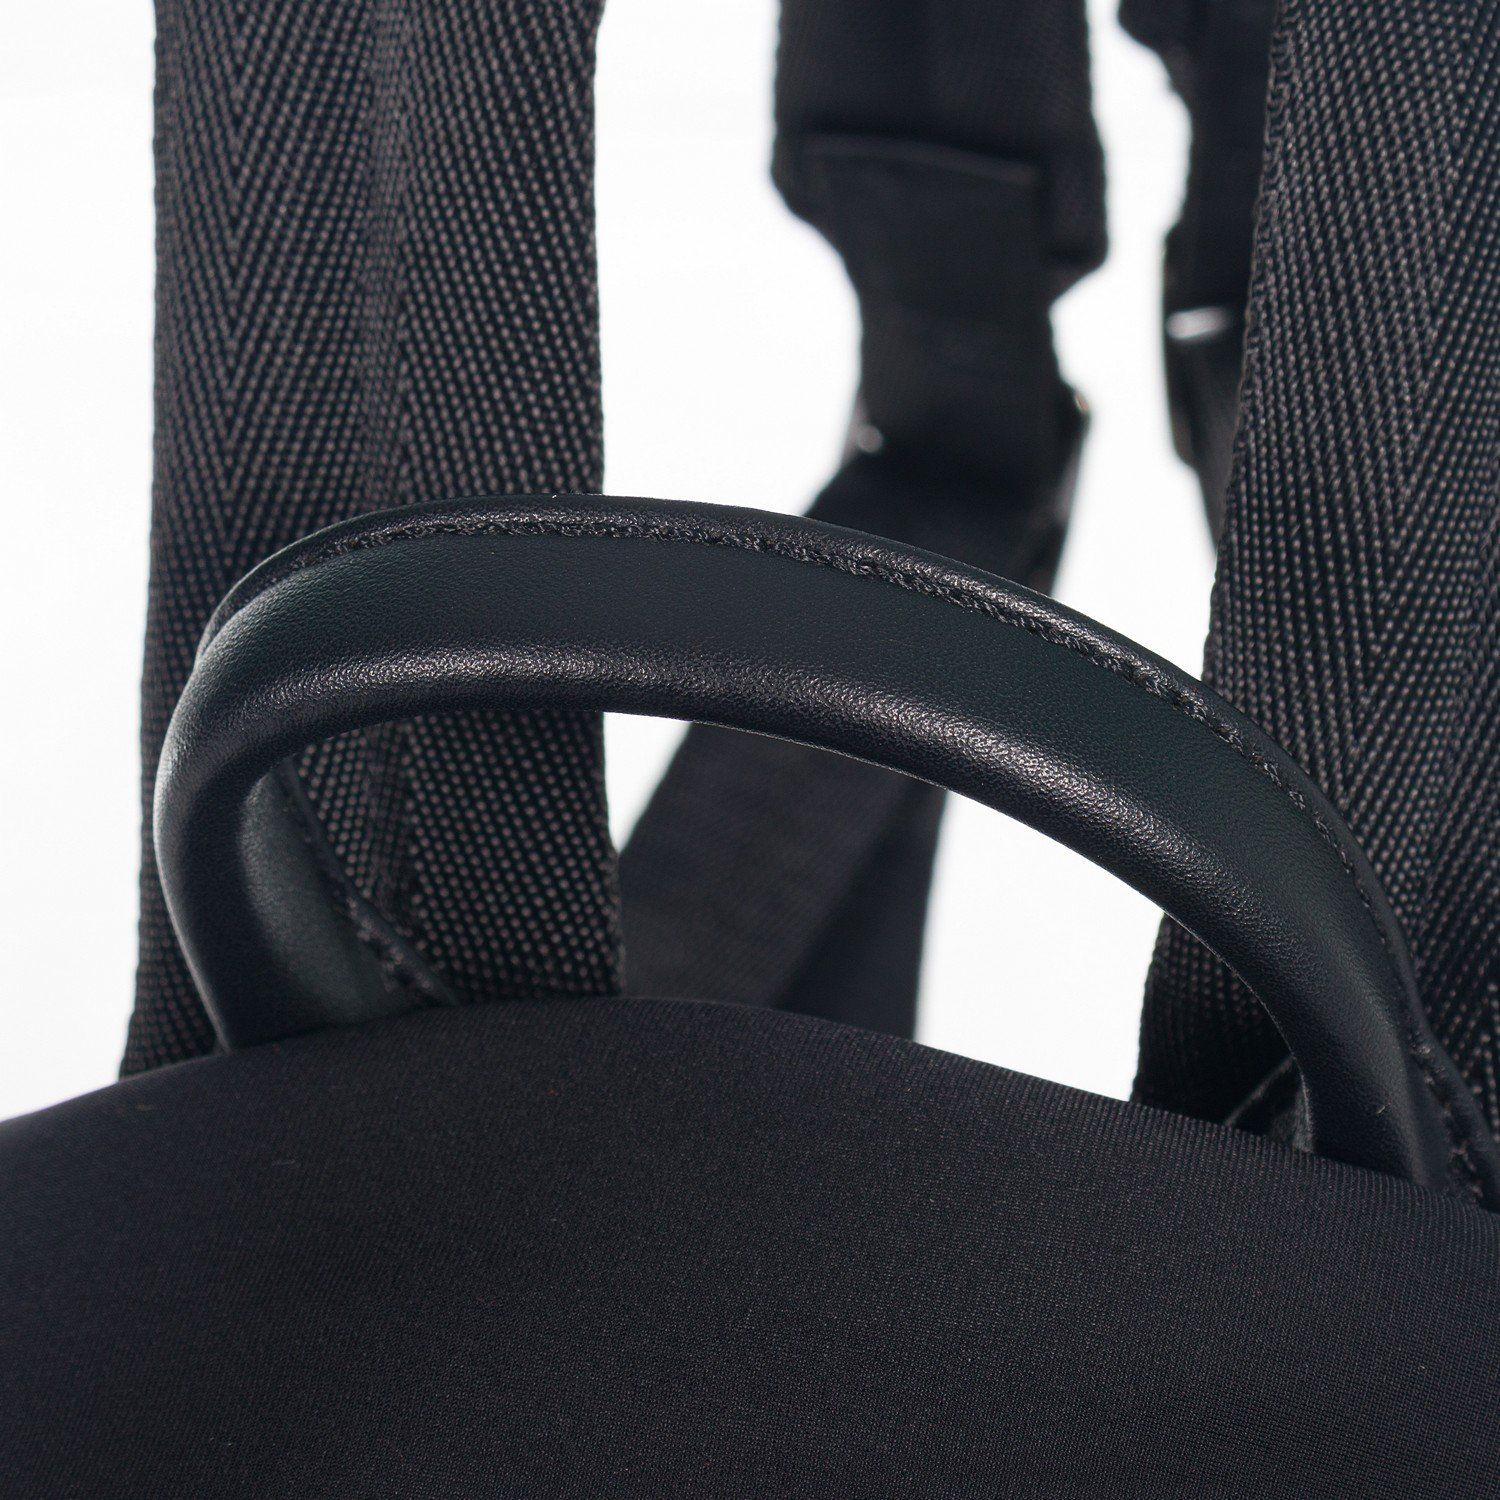 Рюкзак мужской городской, черный, с широкими лямками, объем 20 л